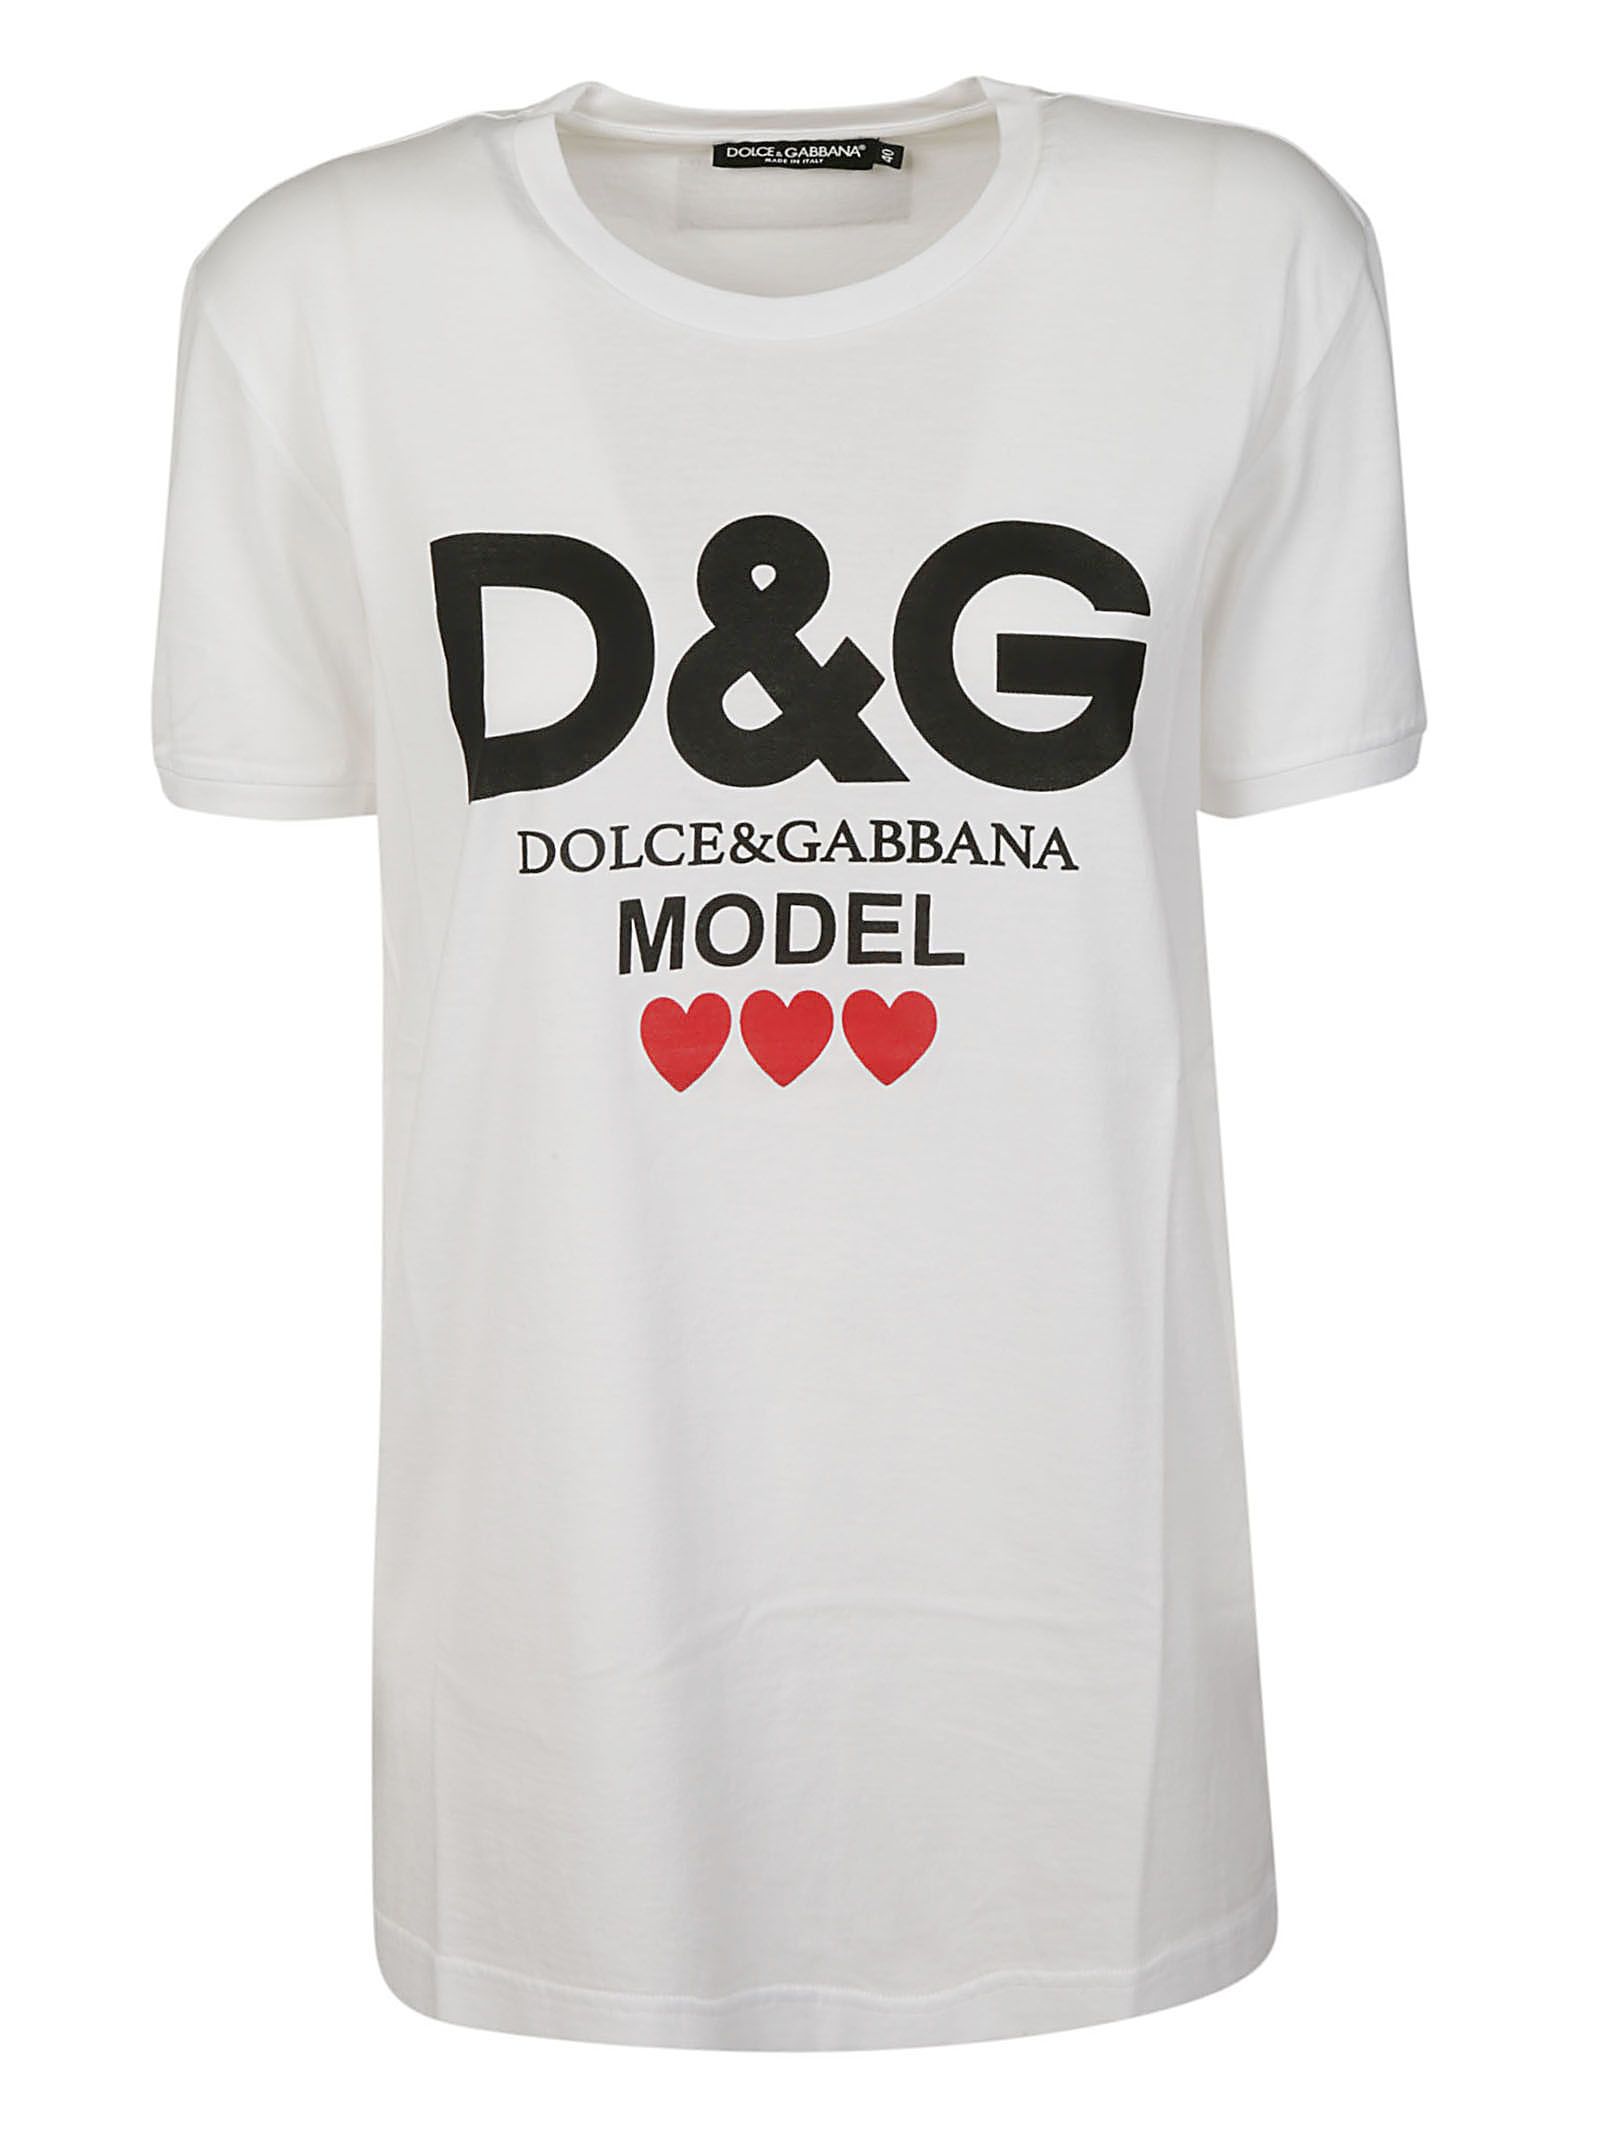 Dolce & Gabbana Dolce & Gabbana Logo Model T-shirt - WHITE - 10700495 ...